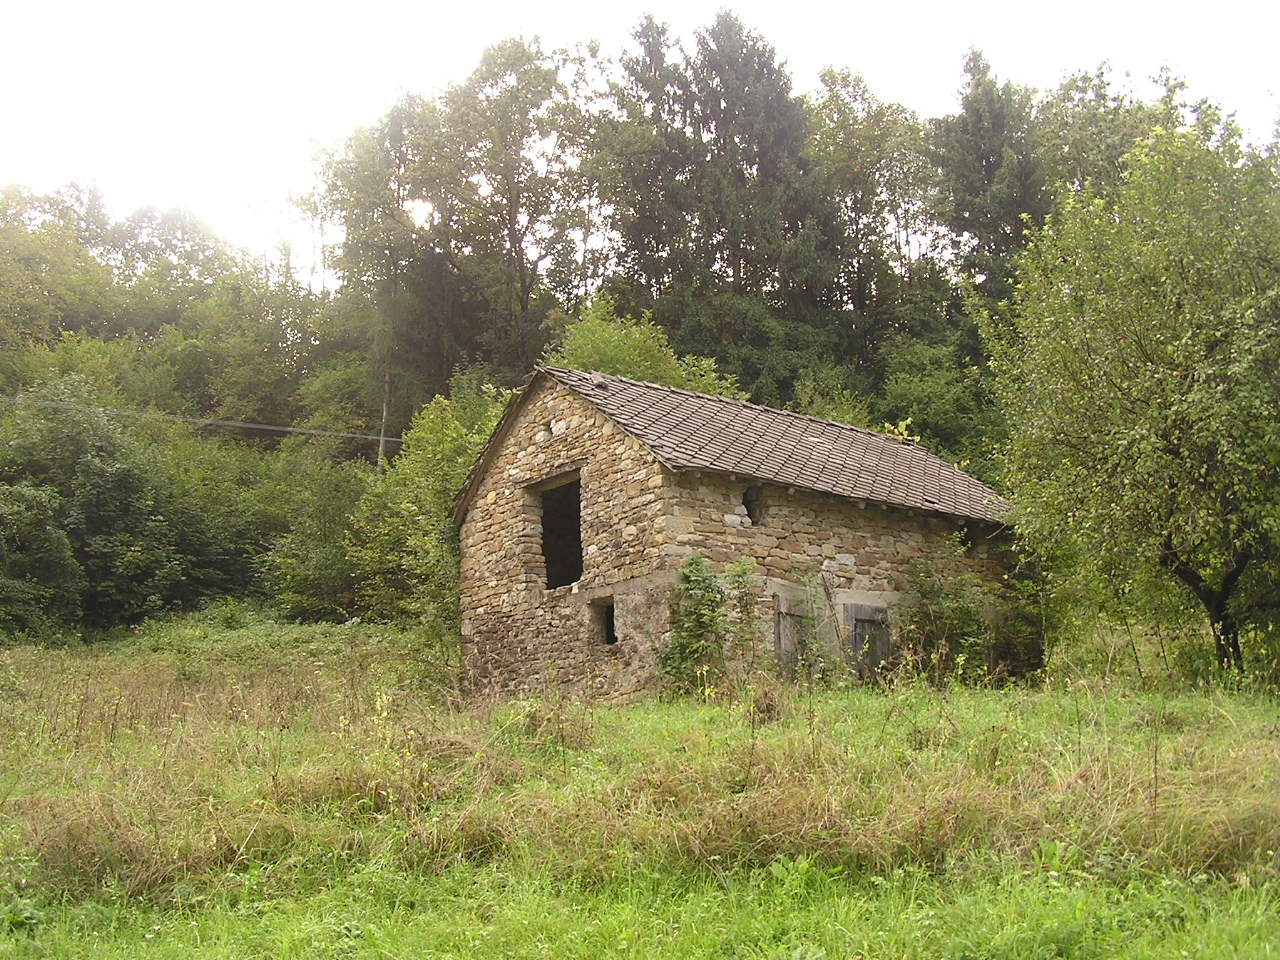 Fienile/stalla - Edificio rurale (fienile) - Chies d'Alpago (BL)  (XIX, inizio)